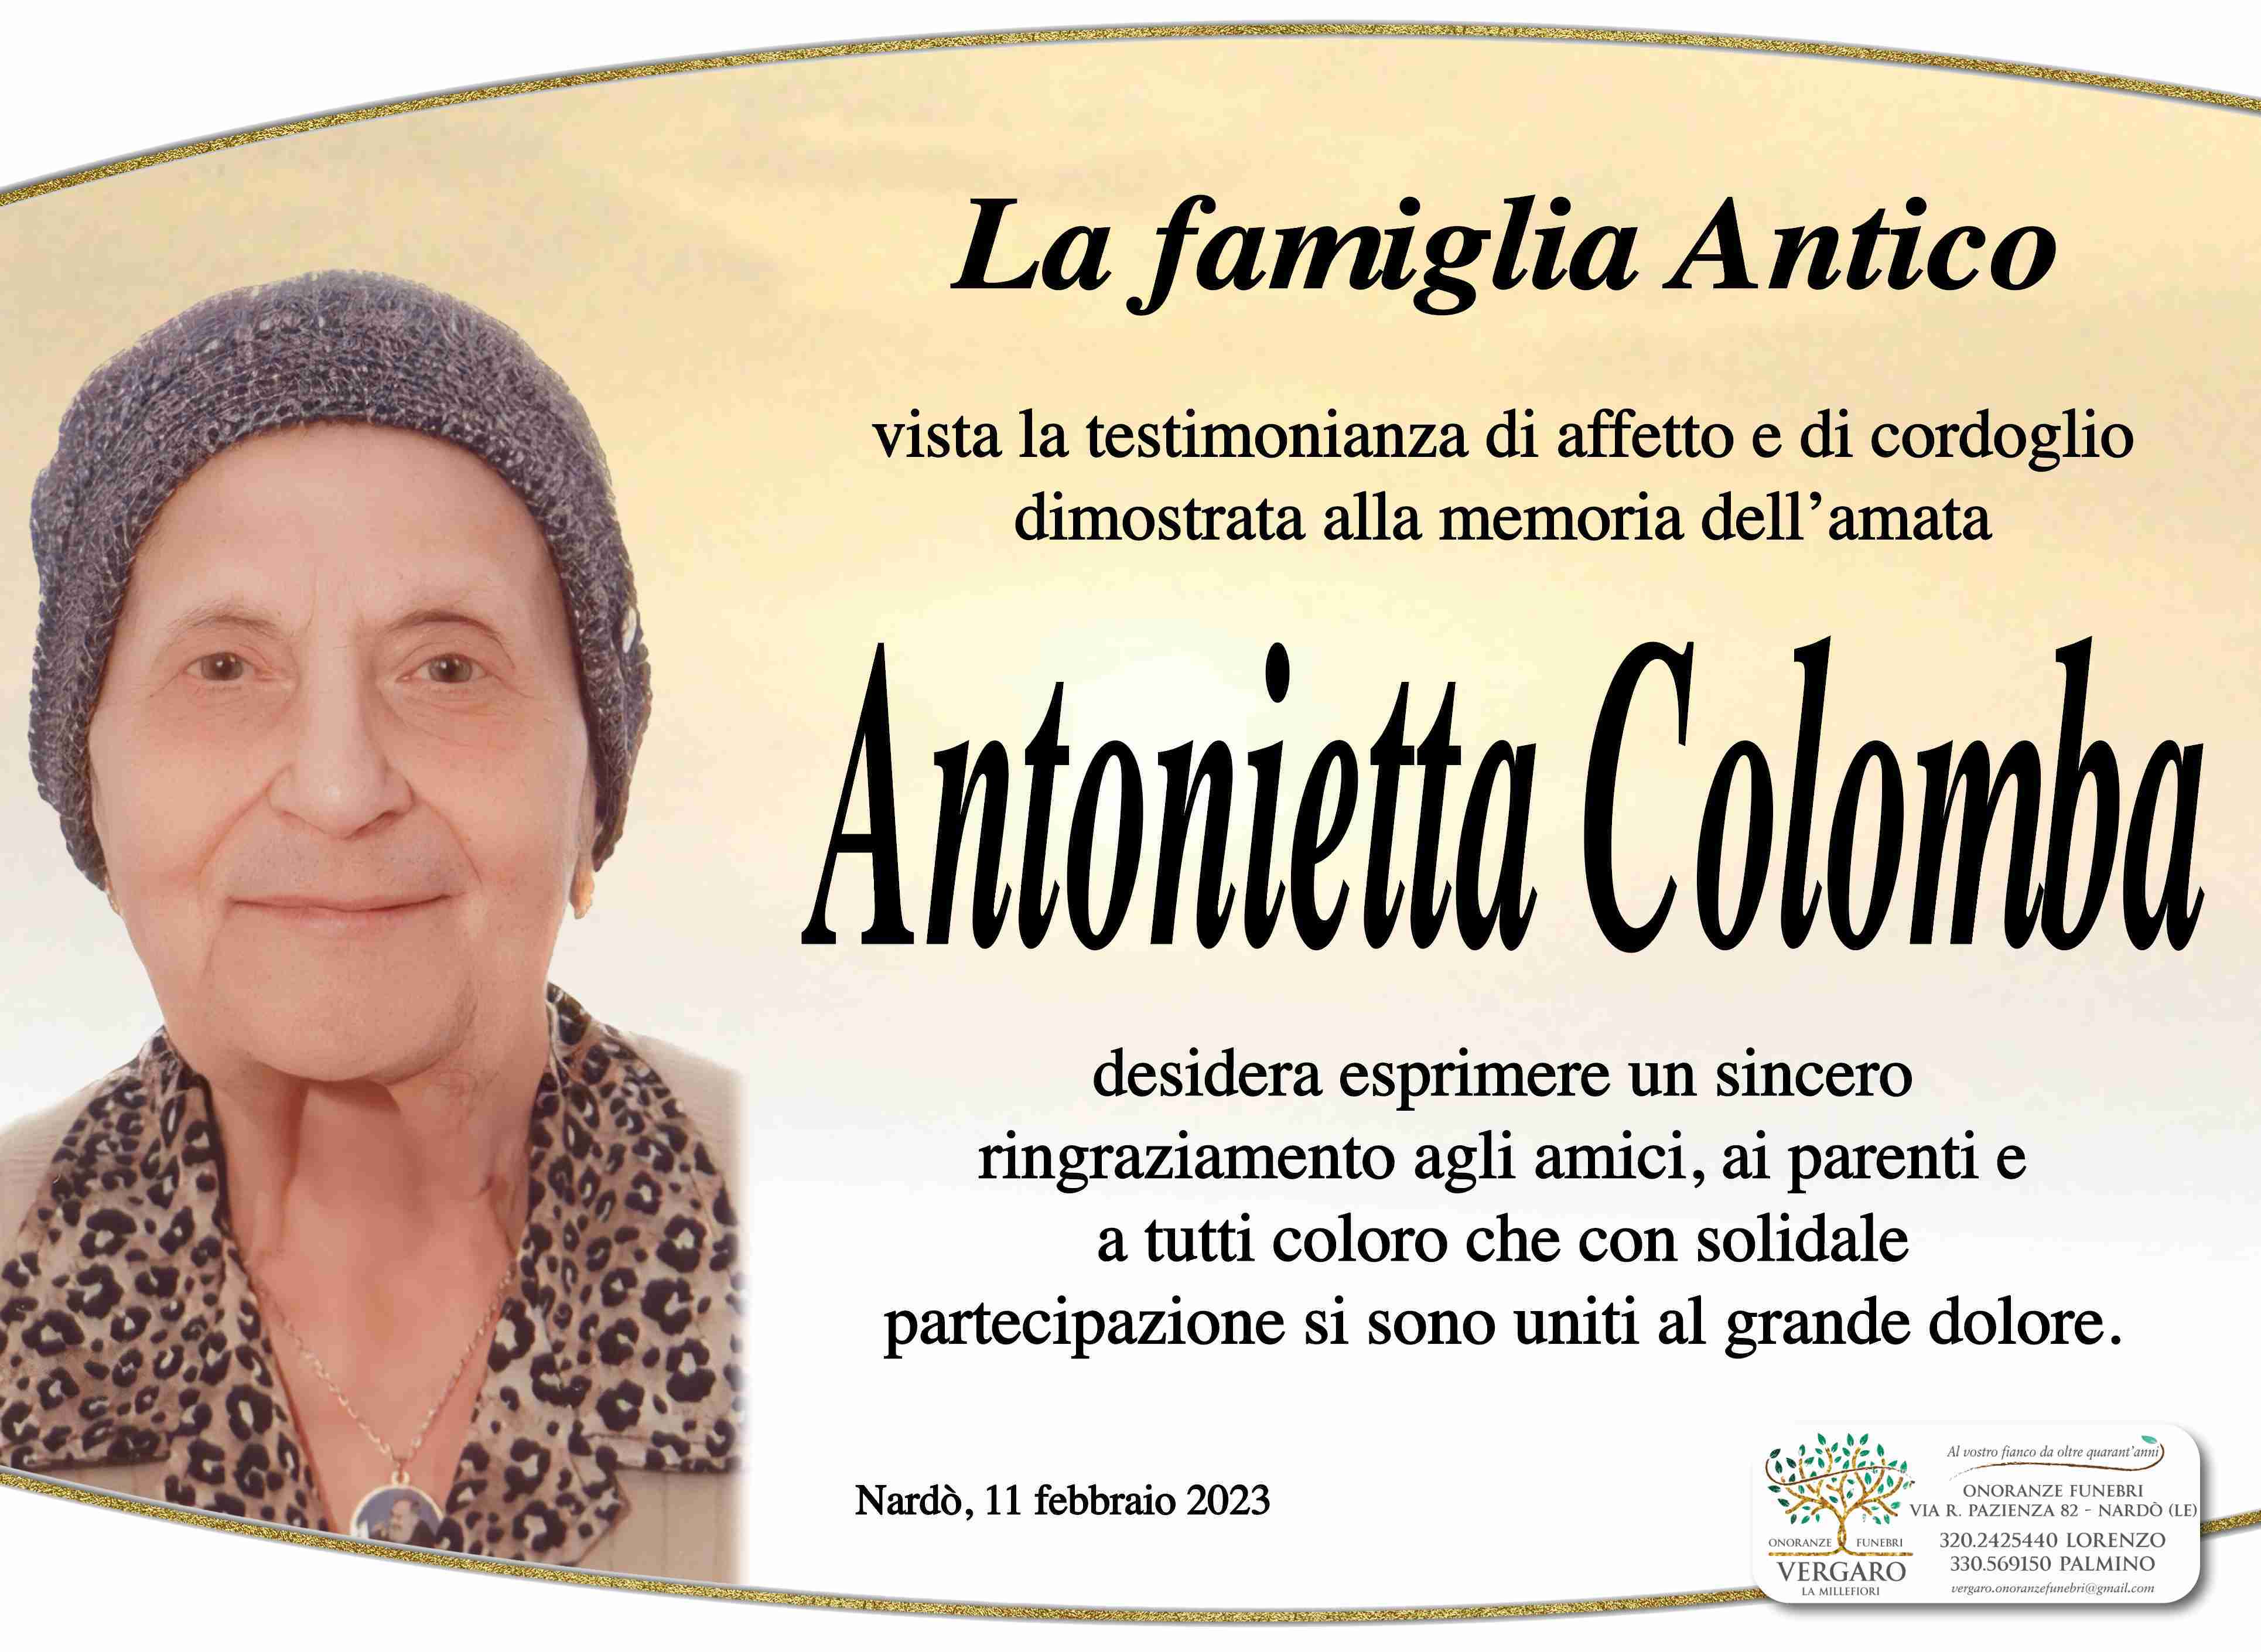 Antonietta Colomba